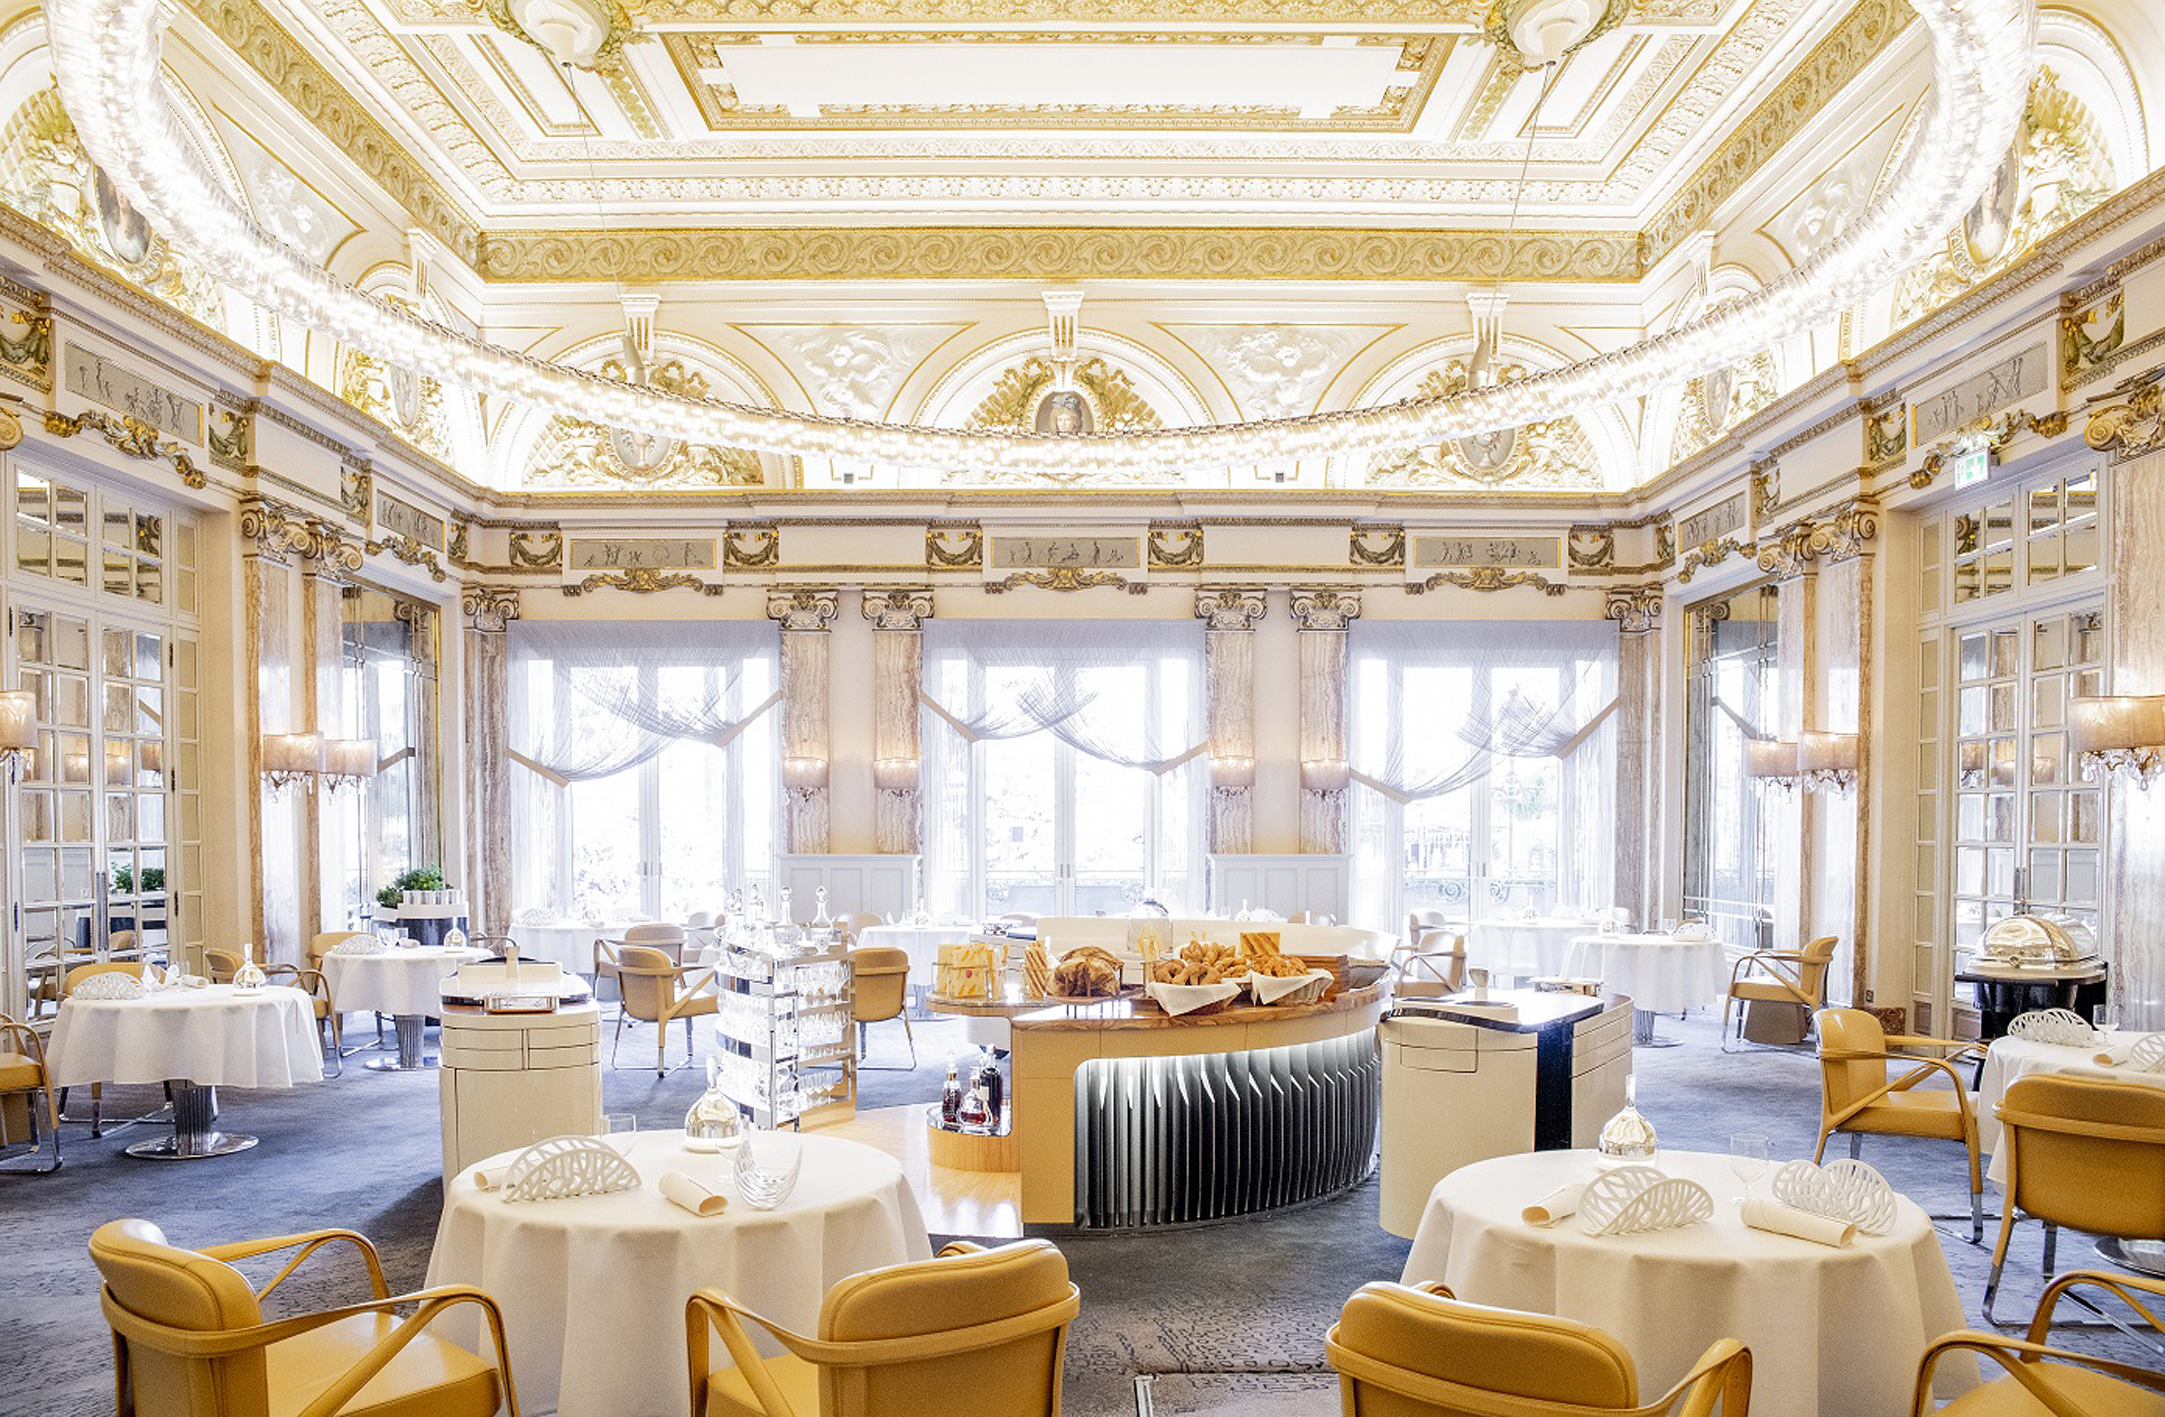 Hôtel de Paris - Restaurant Le Louis XV - Alain Ducasse